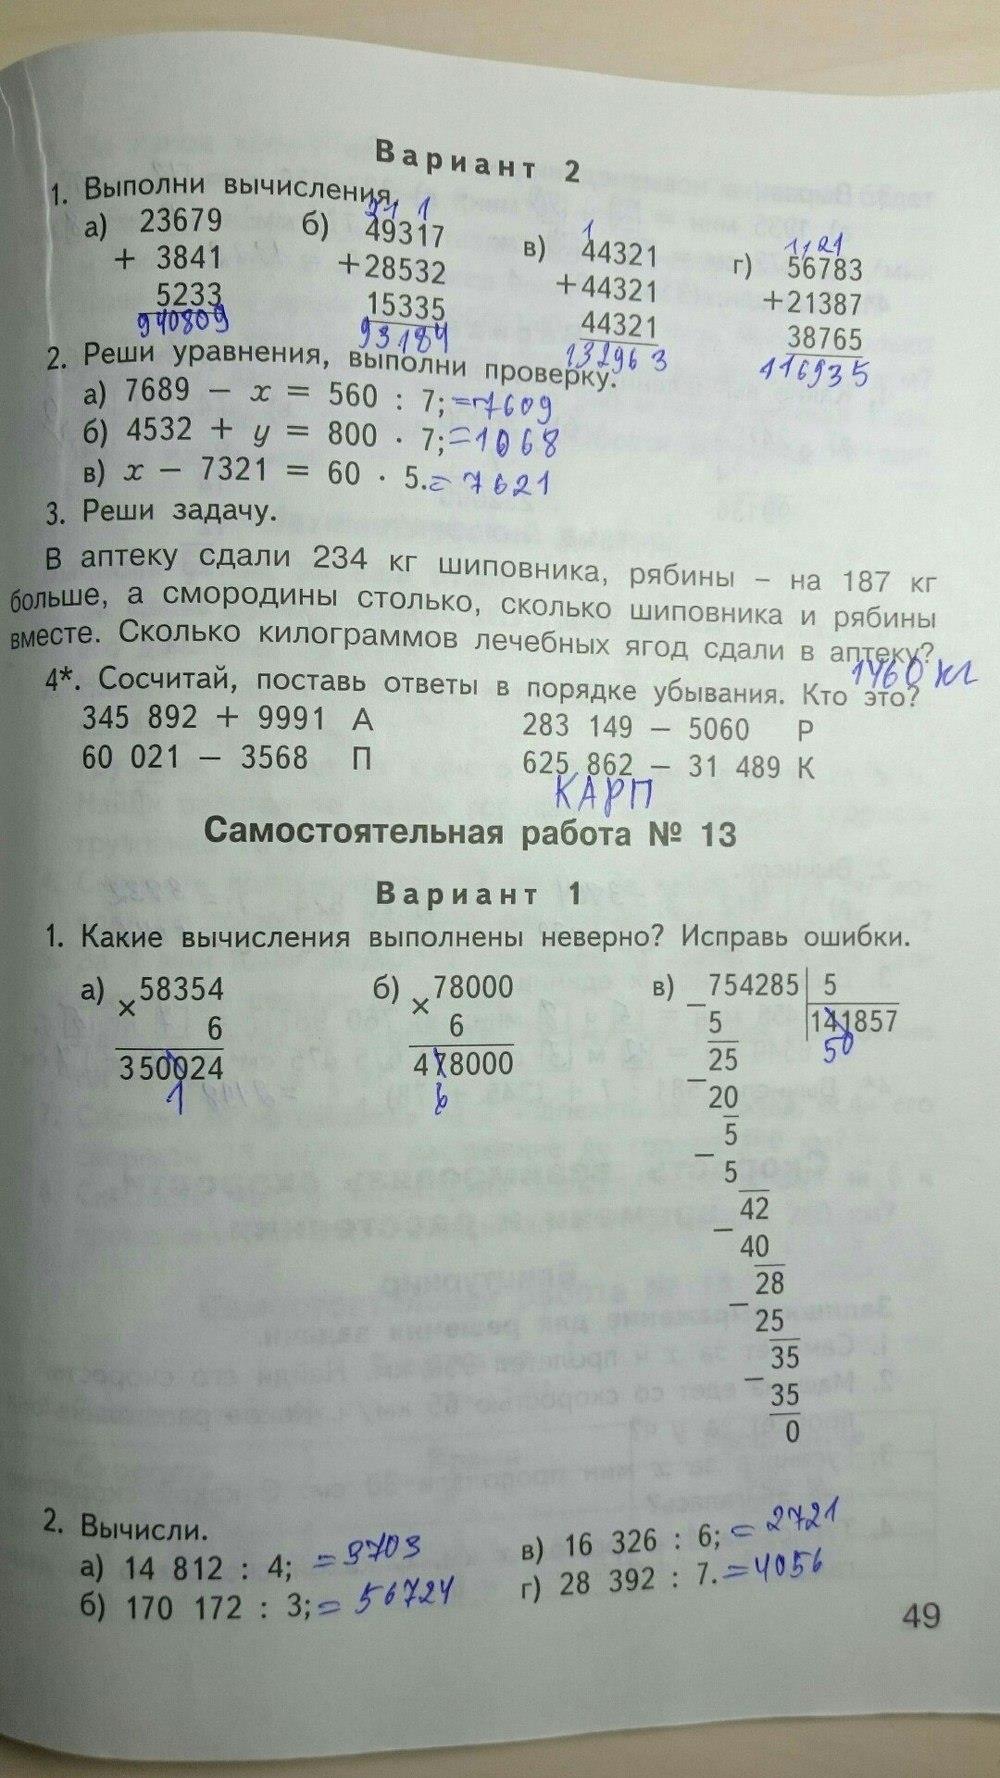 гдз 4 класс контрольно-измерительные материалы страница 49 математика Ситникова